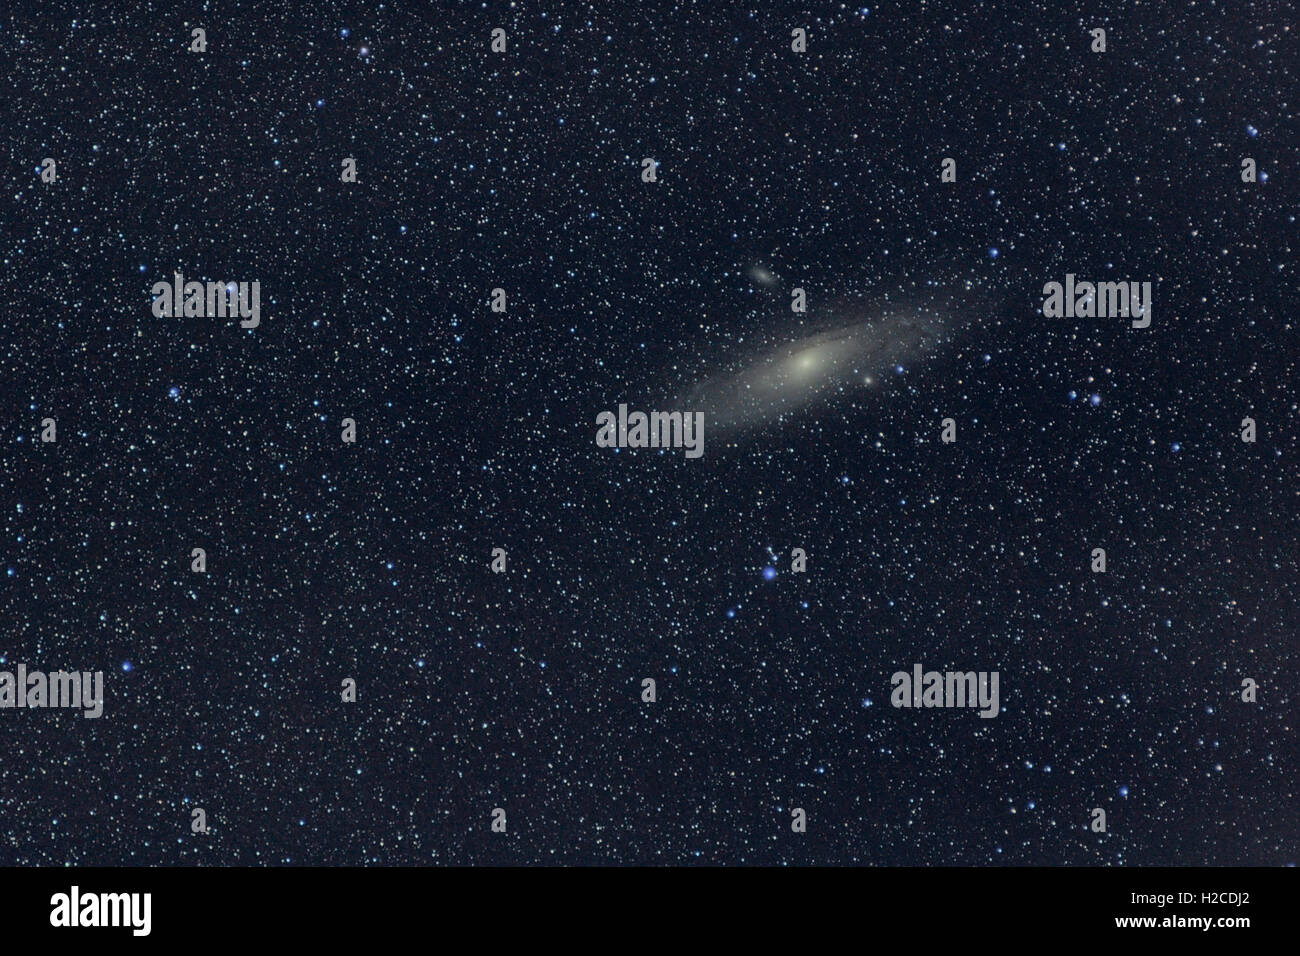 Astronomia Space Universe foto: la galassia di Andromeda (M31 o NGC224) con stelle come primo piano. L'esposizione totale 18 minuti. Foto Stock